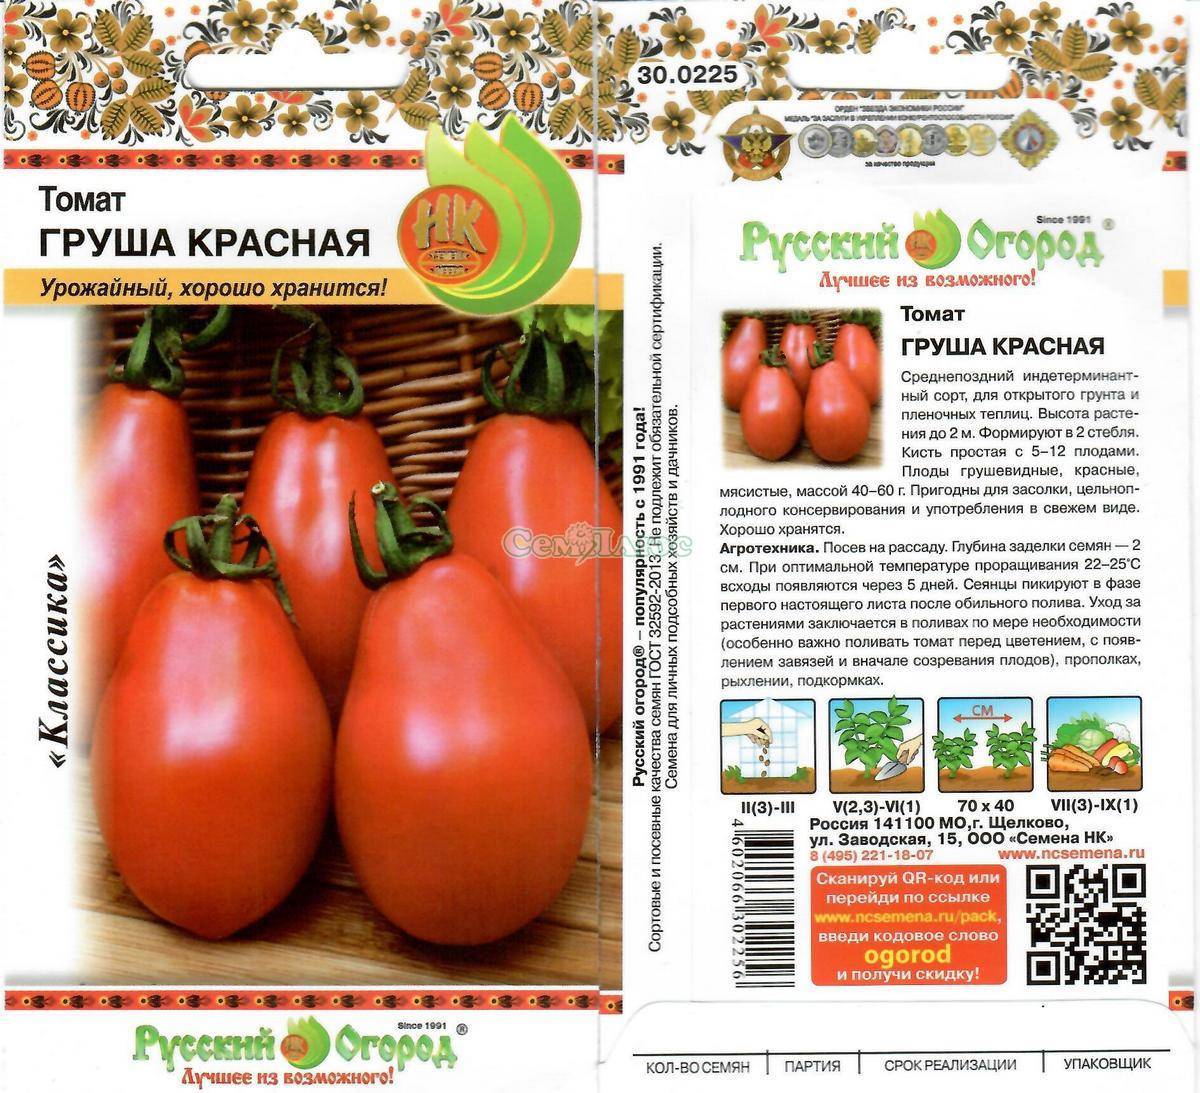 Томат грушовка: описание сорта помидора грушевидной формы